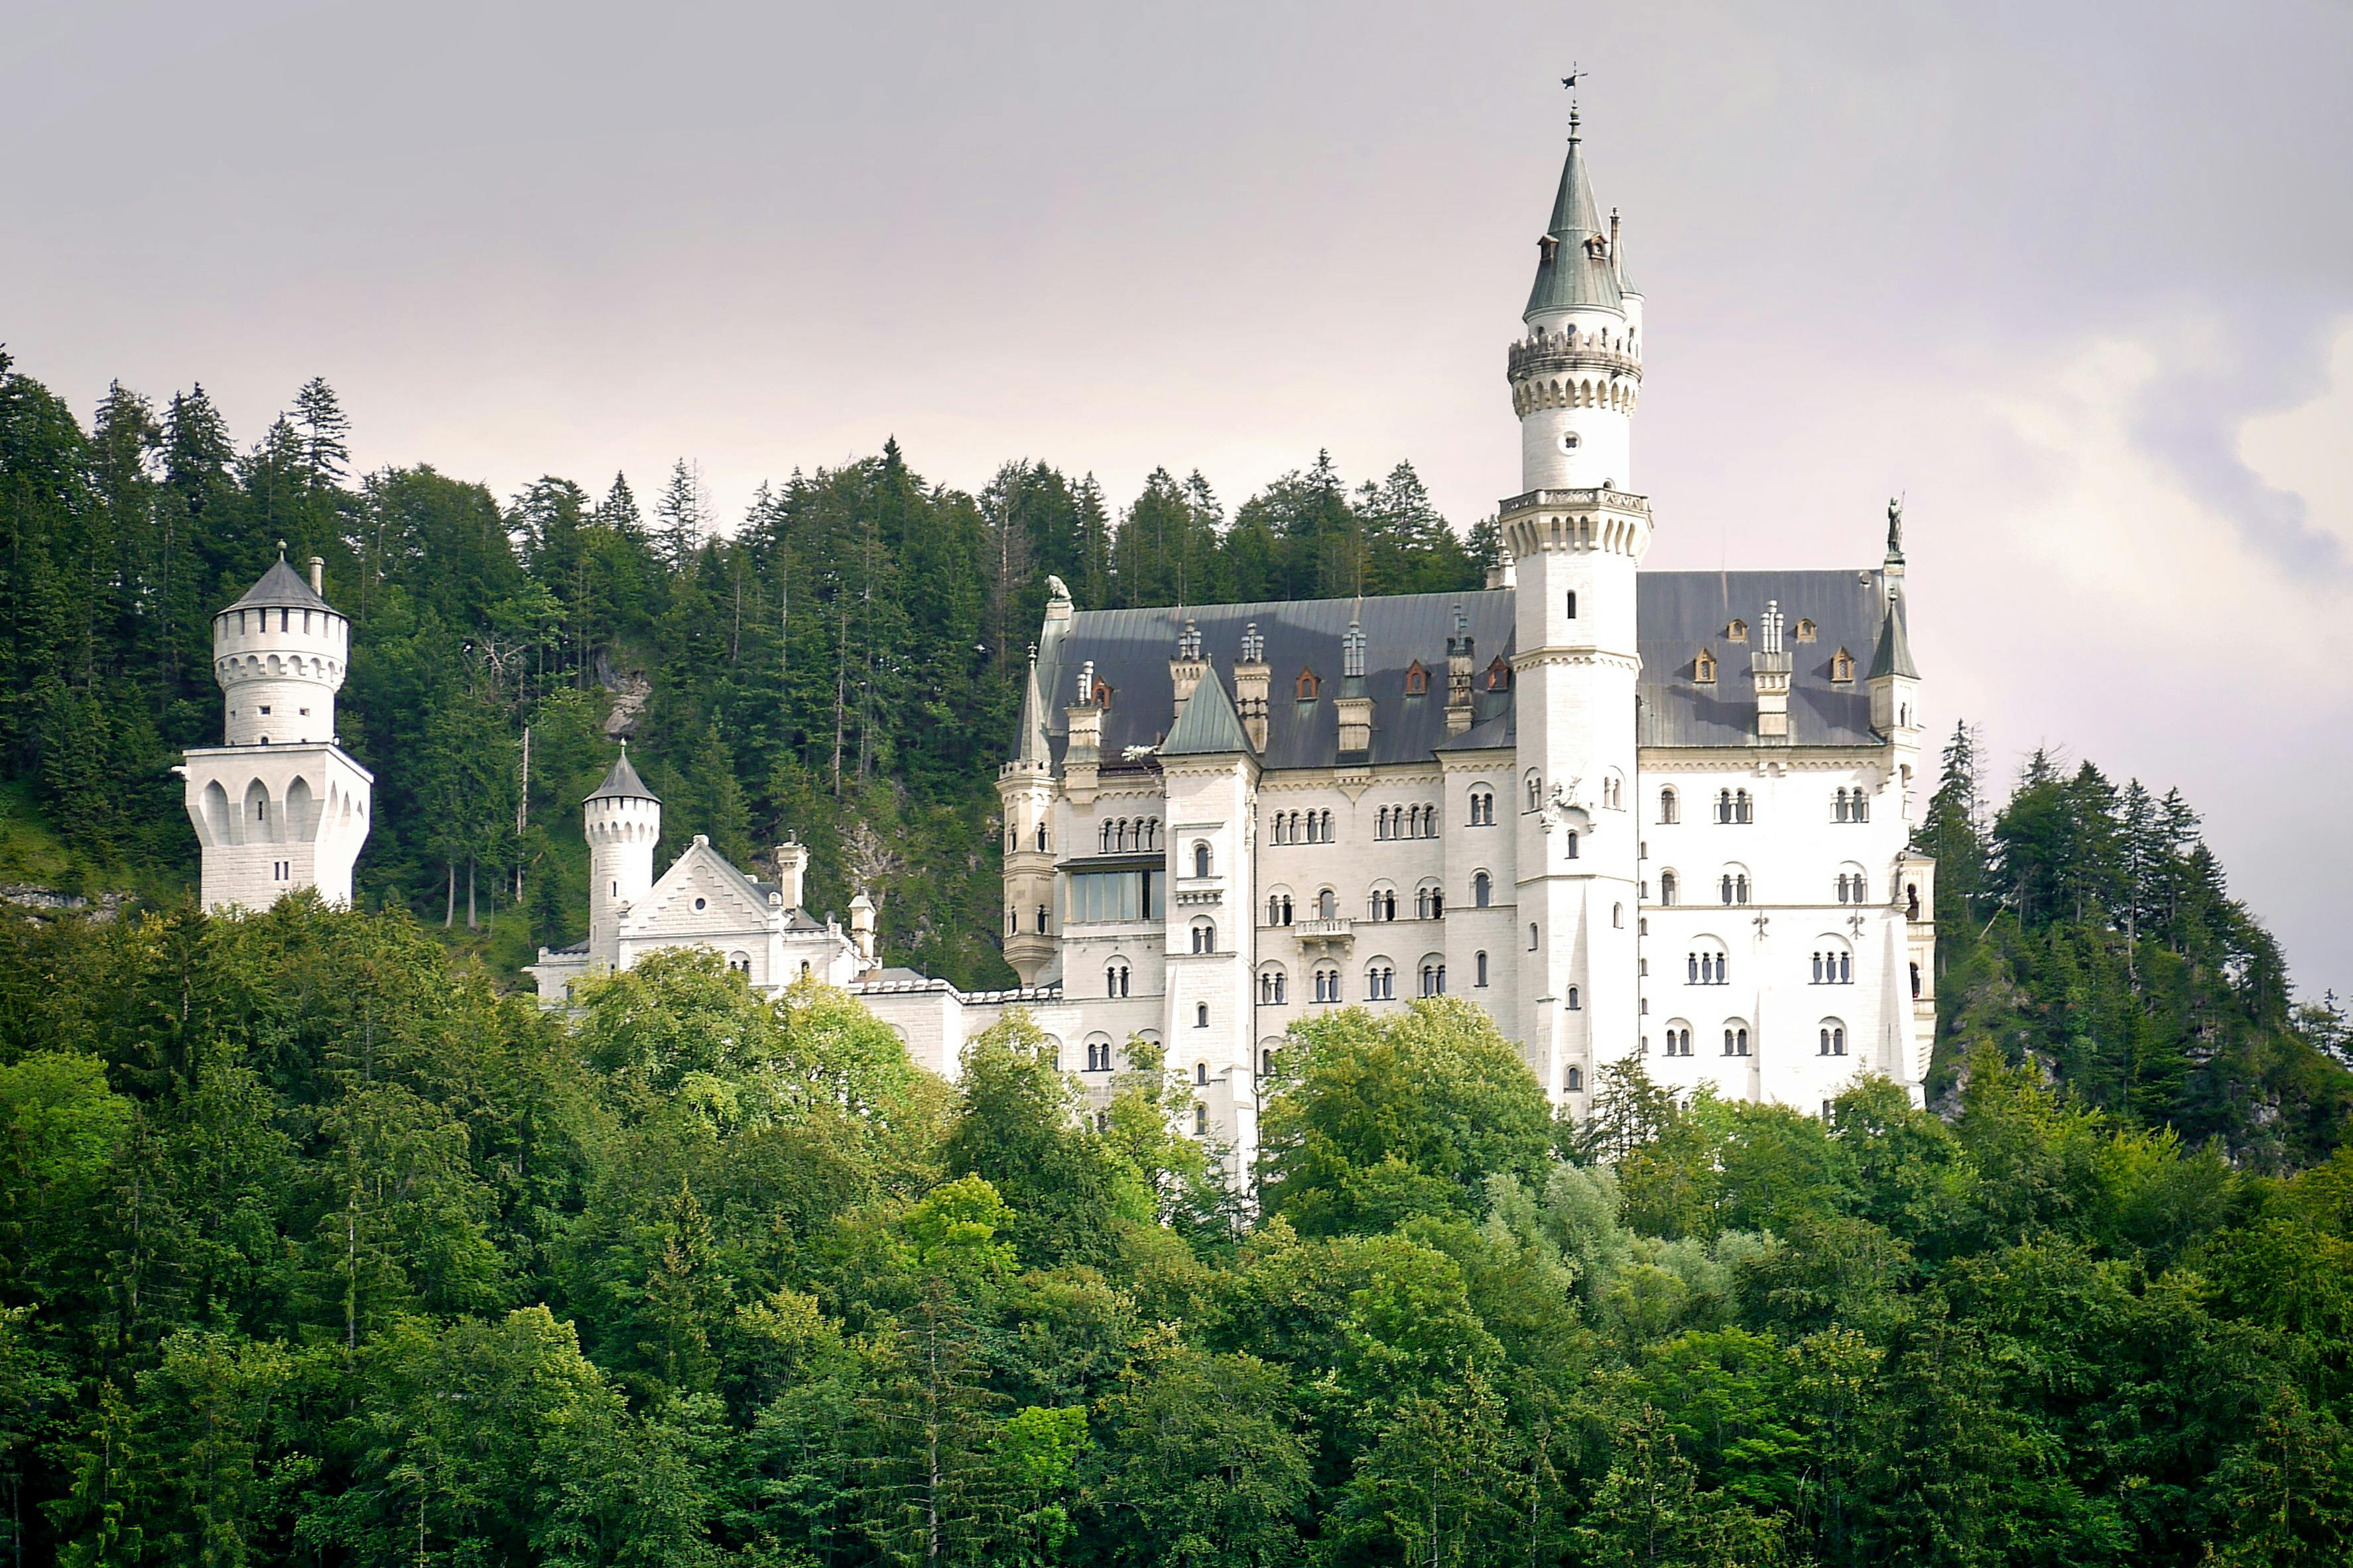 Excursión vip al palacio de Linderhof y al castillo de Neuschwanstein desde Múnich